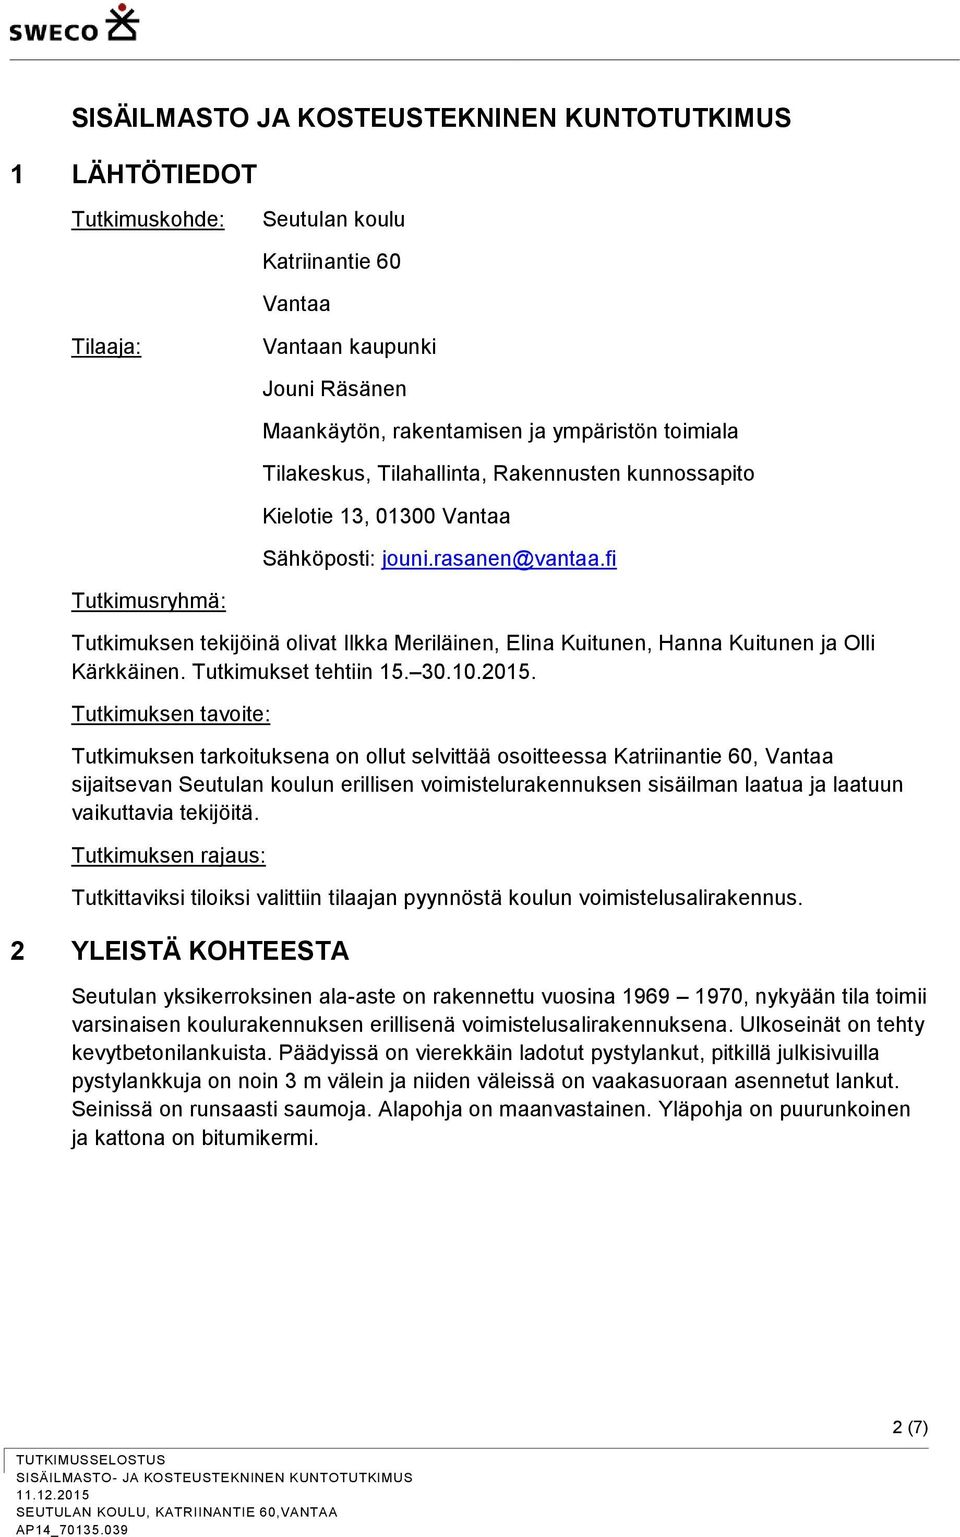 fi Tutkimusryhmä: Tutkimuksen tekijöinä olivat Ilkka Meriläinen, Elina Kuitunen, Hanna Kuitunen ja Olli Kärkkäinen. Tutkimukset tehtiin 15. 30.10.2015.